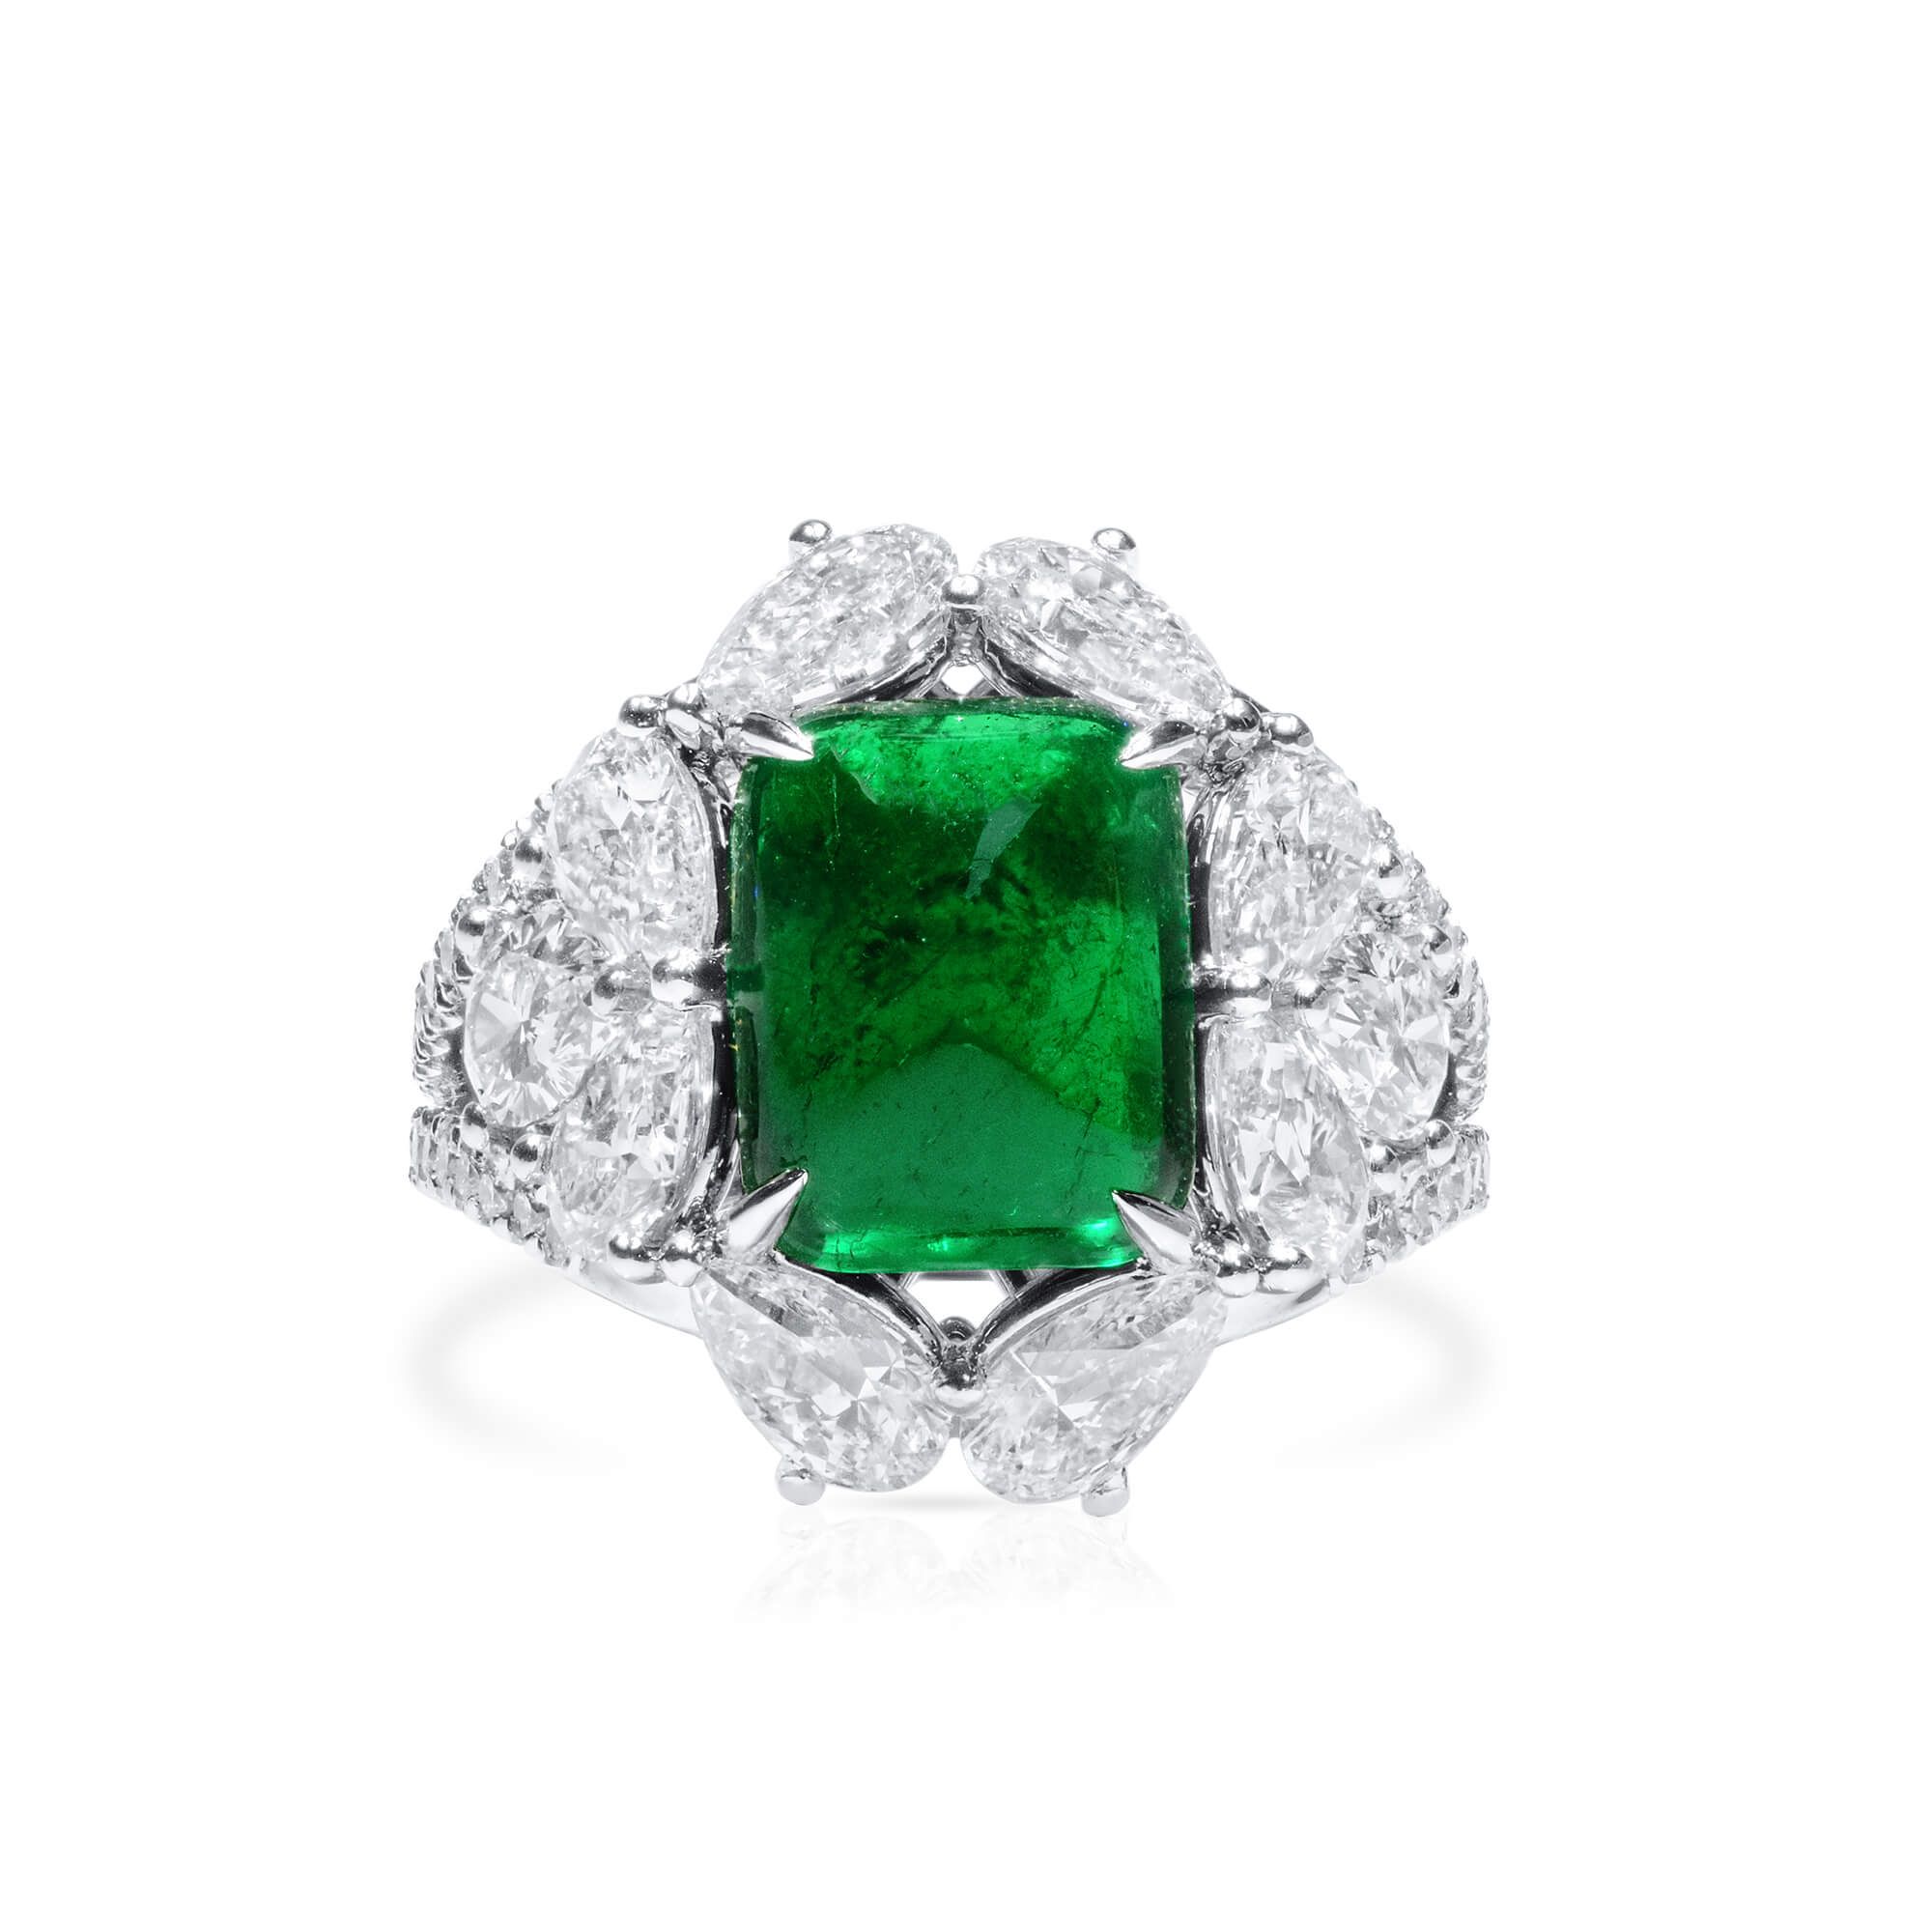 天然 Vivid Green 祖母绿型 戒指, 3.75 重量 (7.43 克拉 总重), GRS 认证, GRS2021-068656